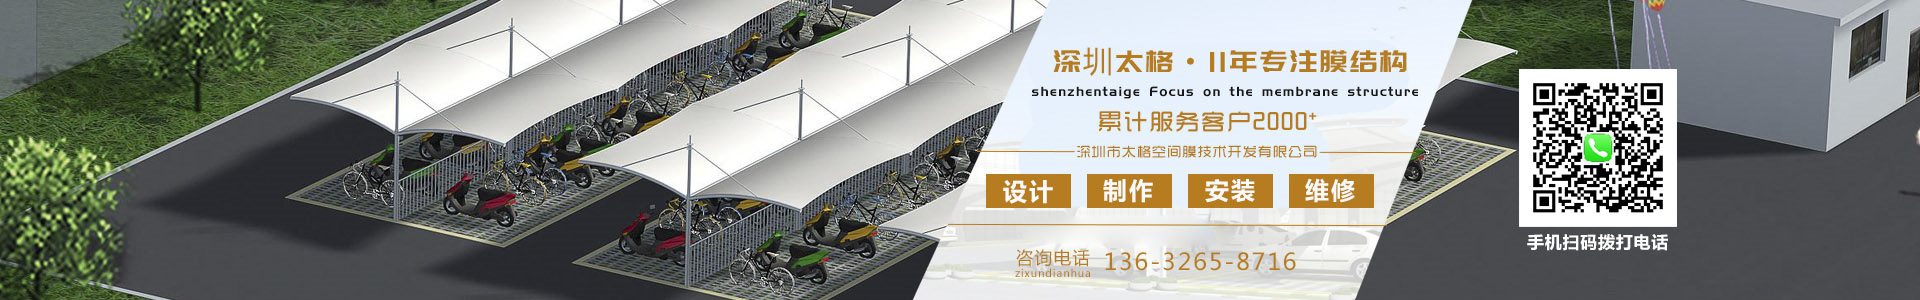 膜结构车棚-膜结构停车棚厂家-张拉膜结构工程 - 深圳市快盈ll